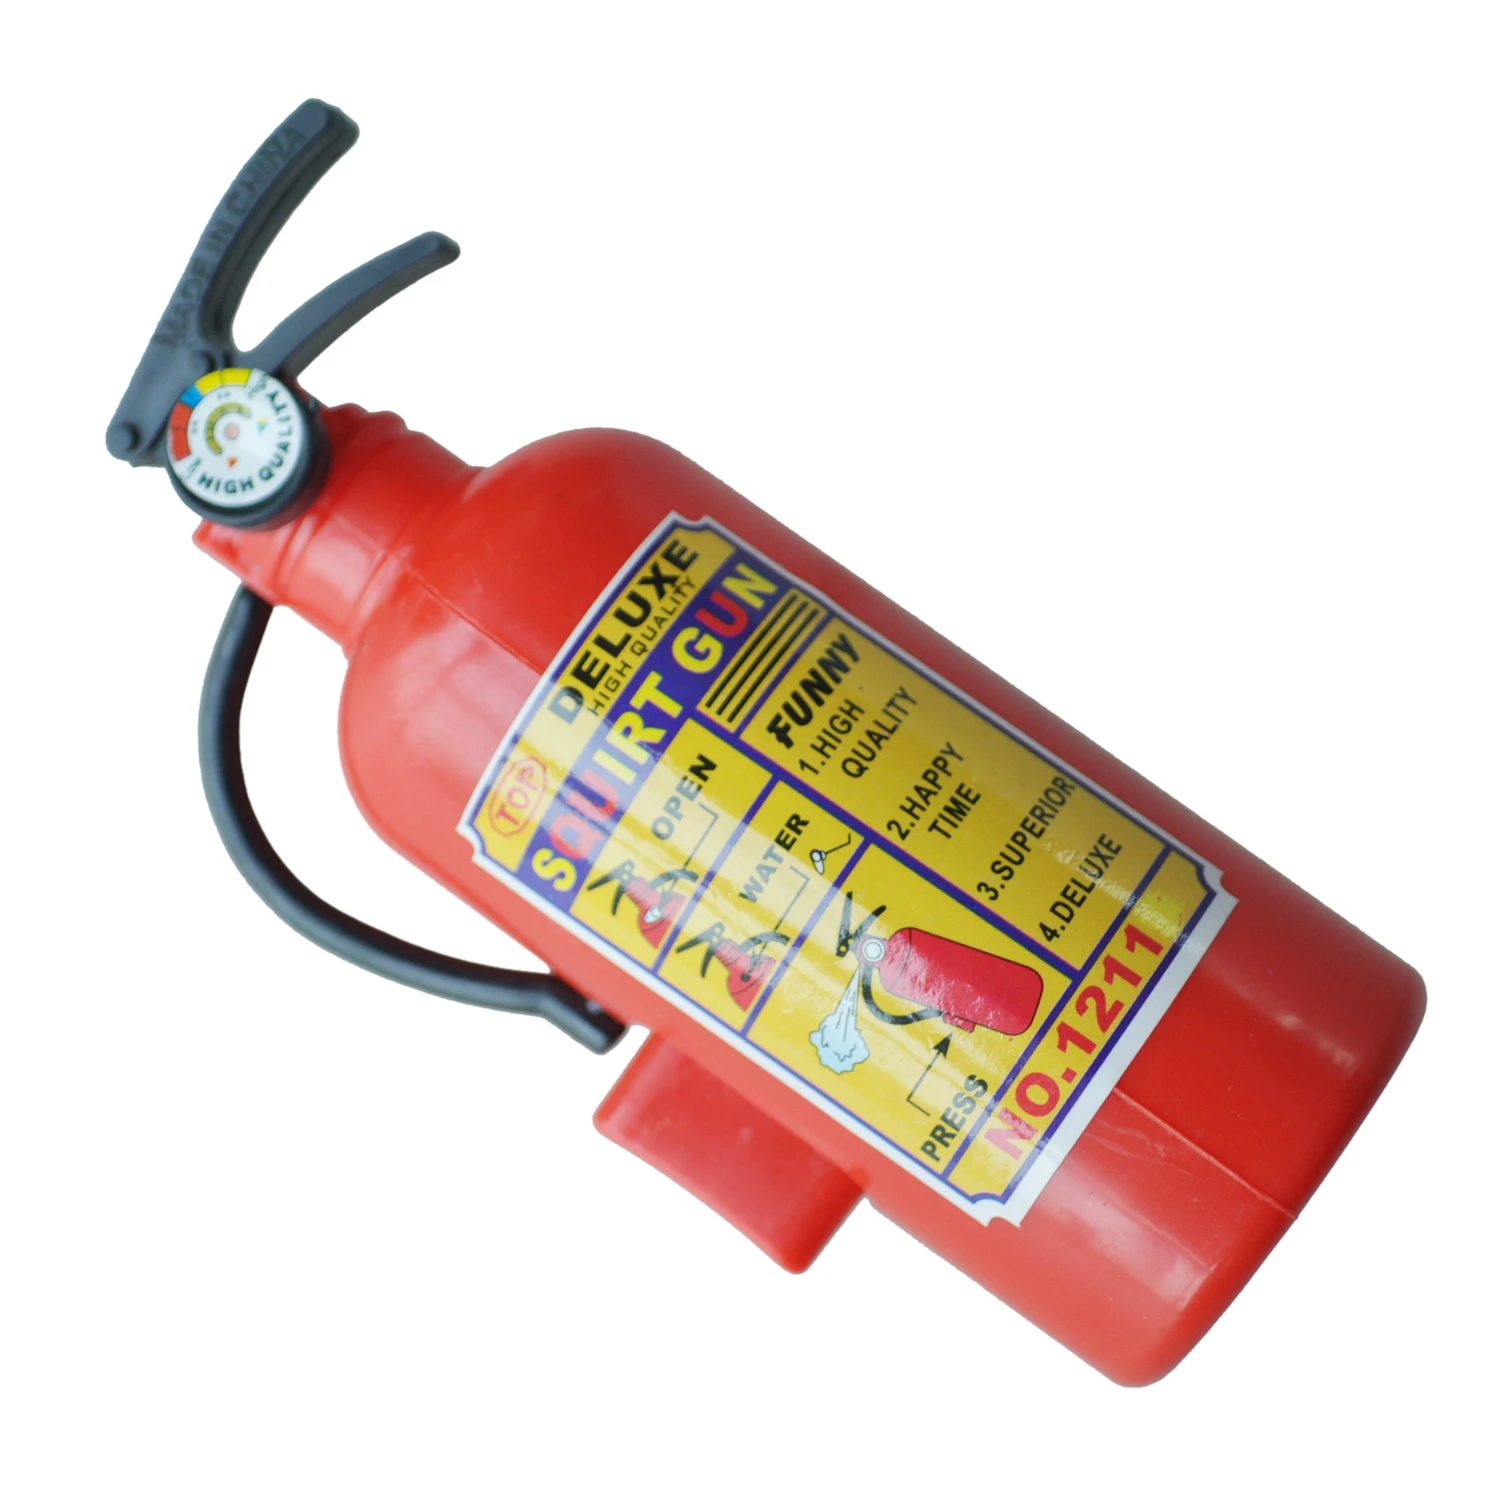 Kinder Rot Plastik Feuerloescher Geformtes Wasserpistole-Spielzeug Y8Y5 7X W8 